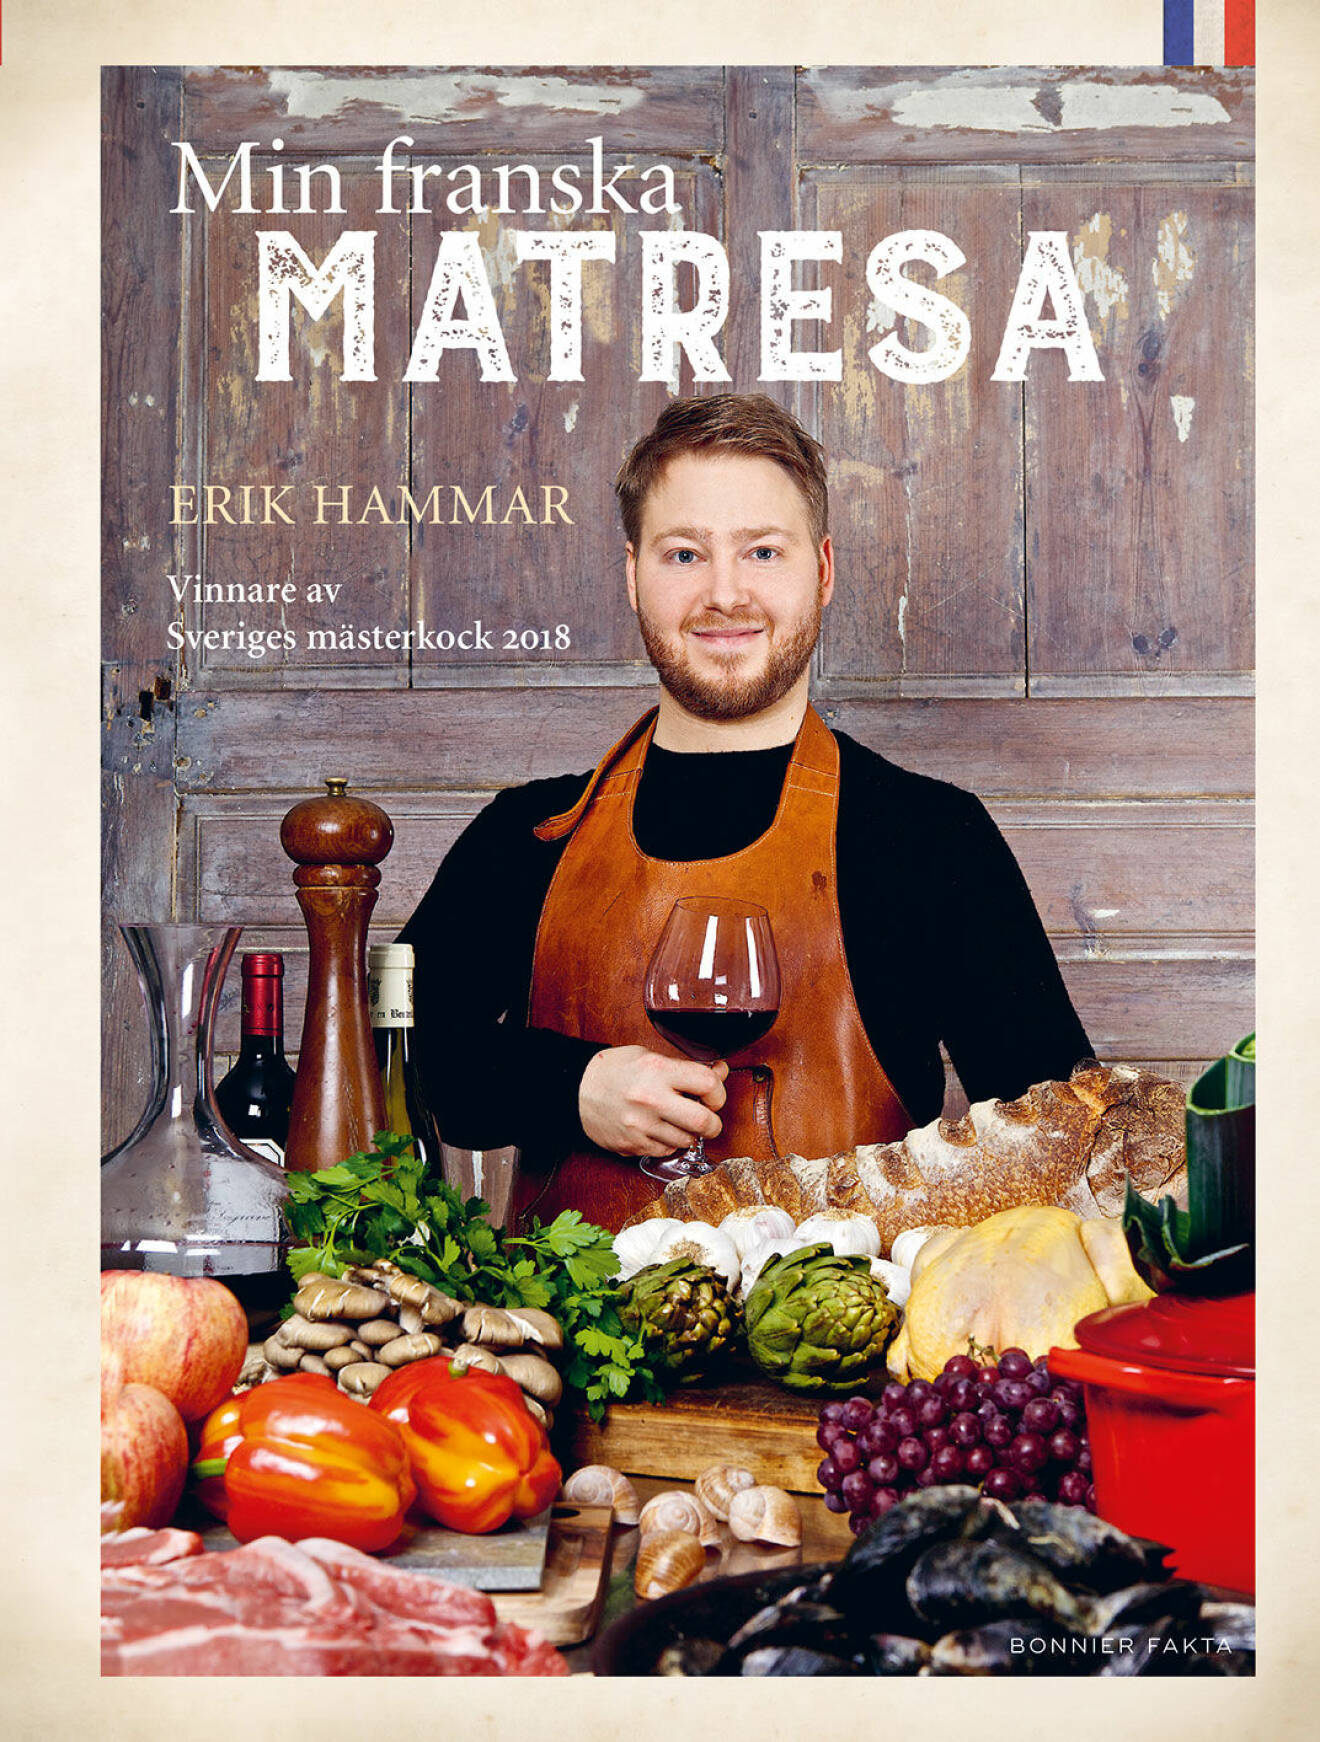 Eriks Hammars kokbok - "Min franska matresa". Den kan du vinna i tidningen i nr 16.